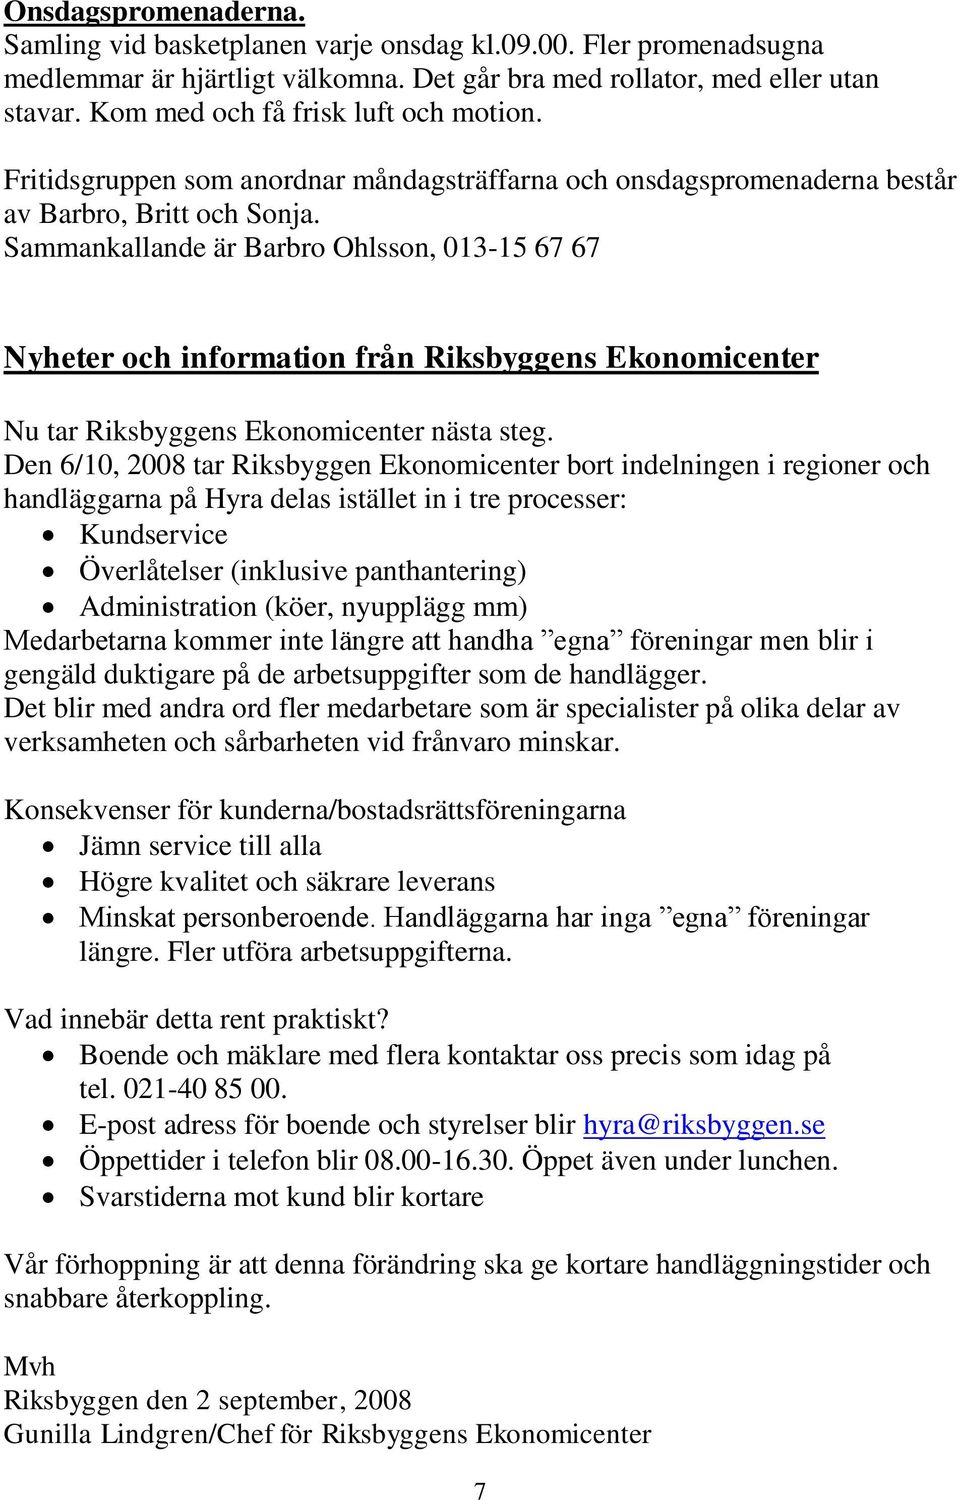 Sammankallande är Barbro Ohlsson, 013-15 67 67 Nyheter och information från Riksbyggens Ekonomicenter Nu tar Riksbyggens Ekonomicenter nästa steg.